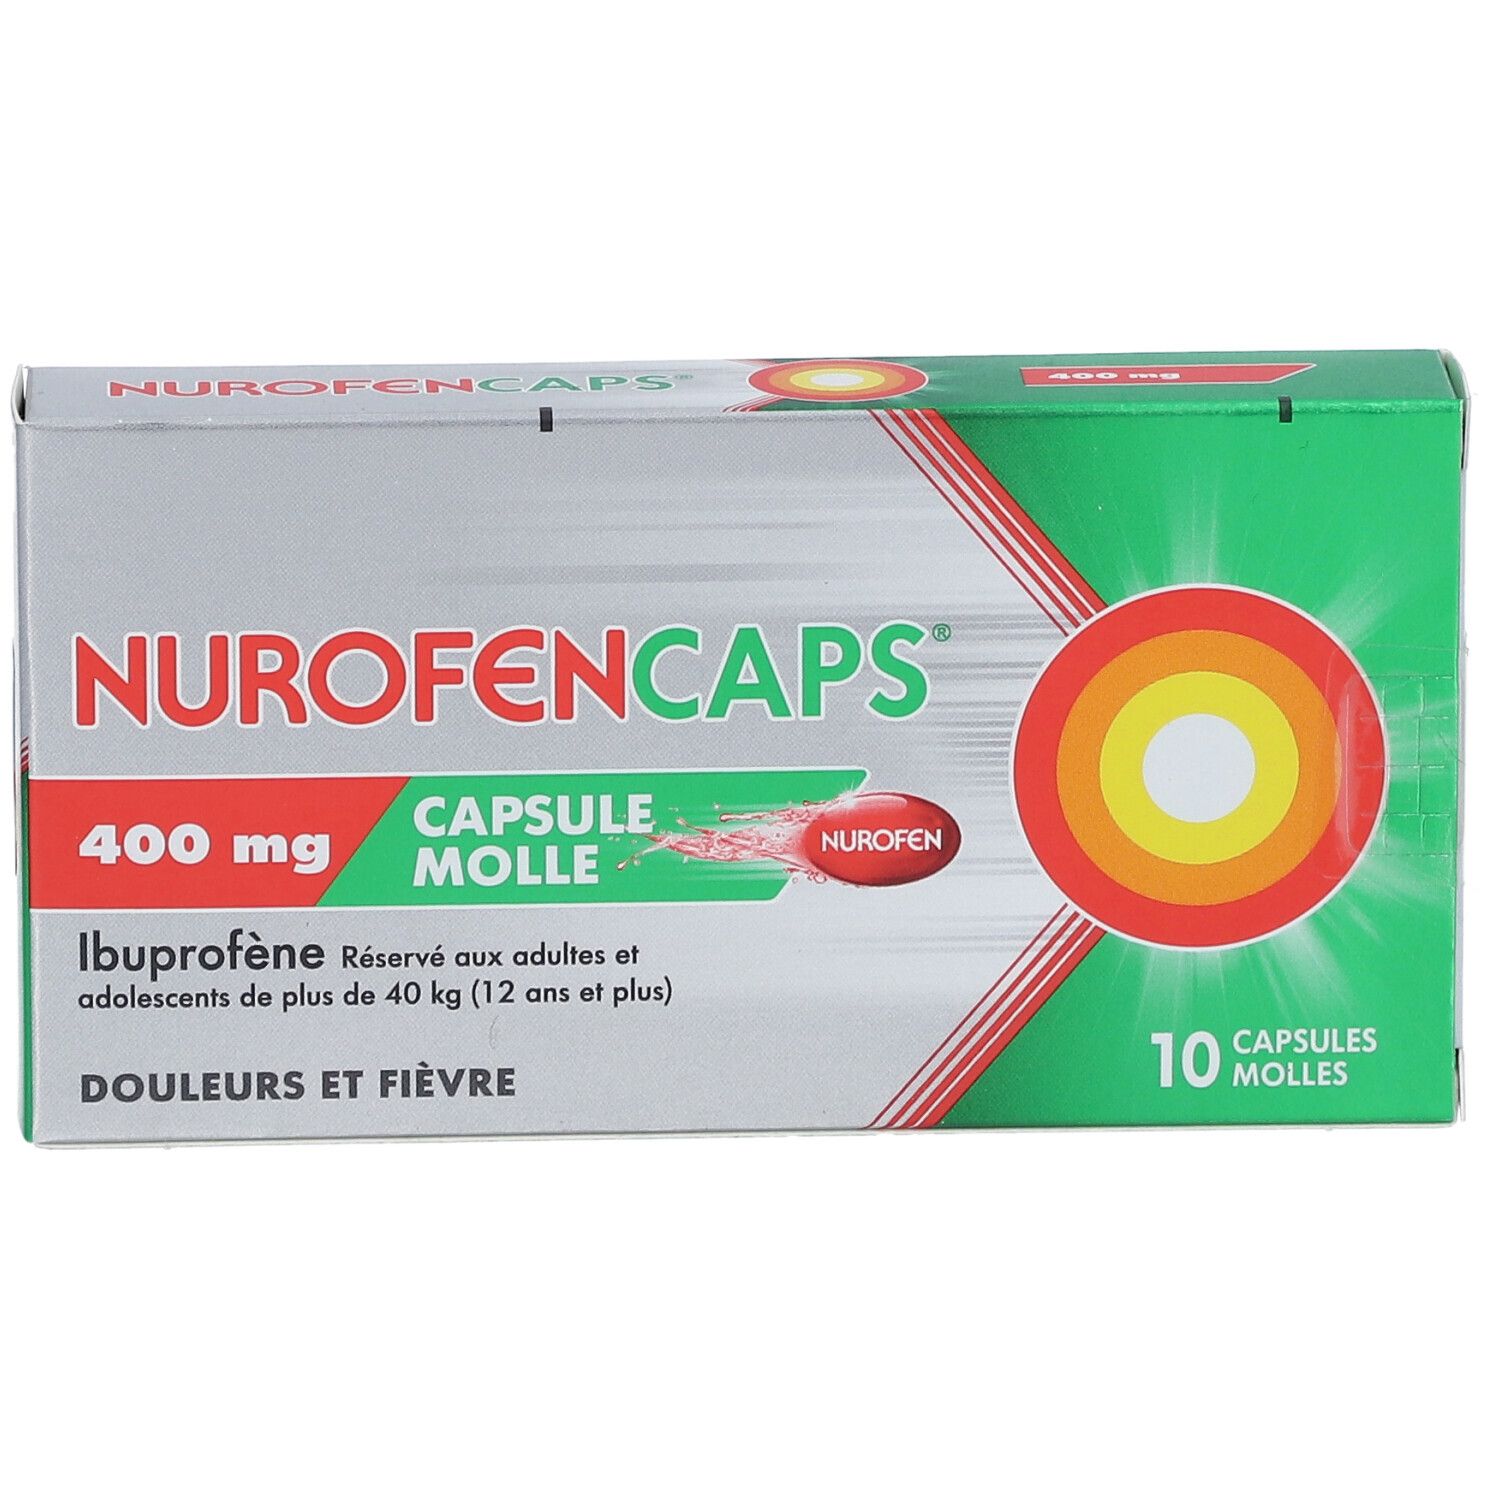 Nurofencaps® 400 mg